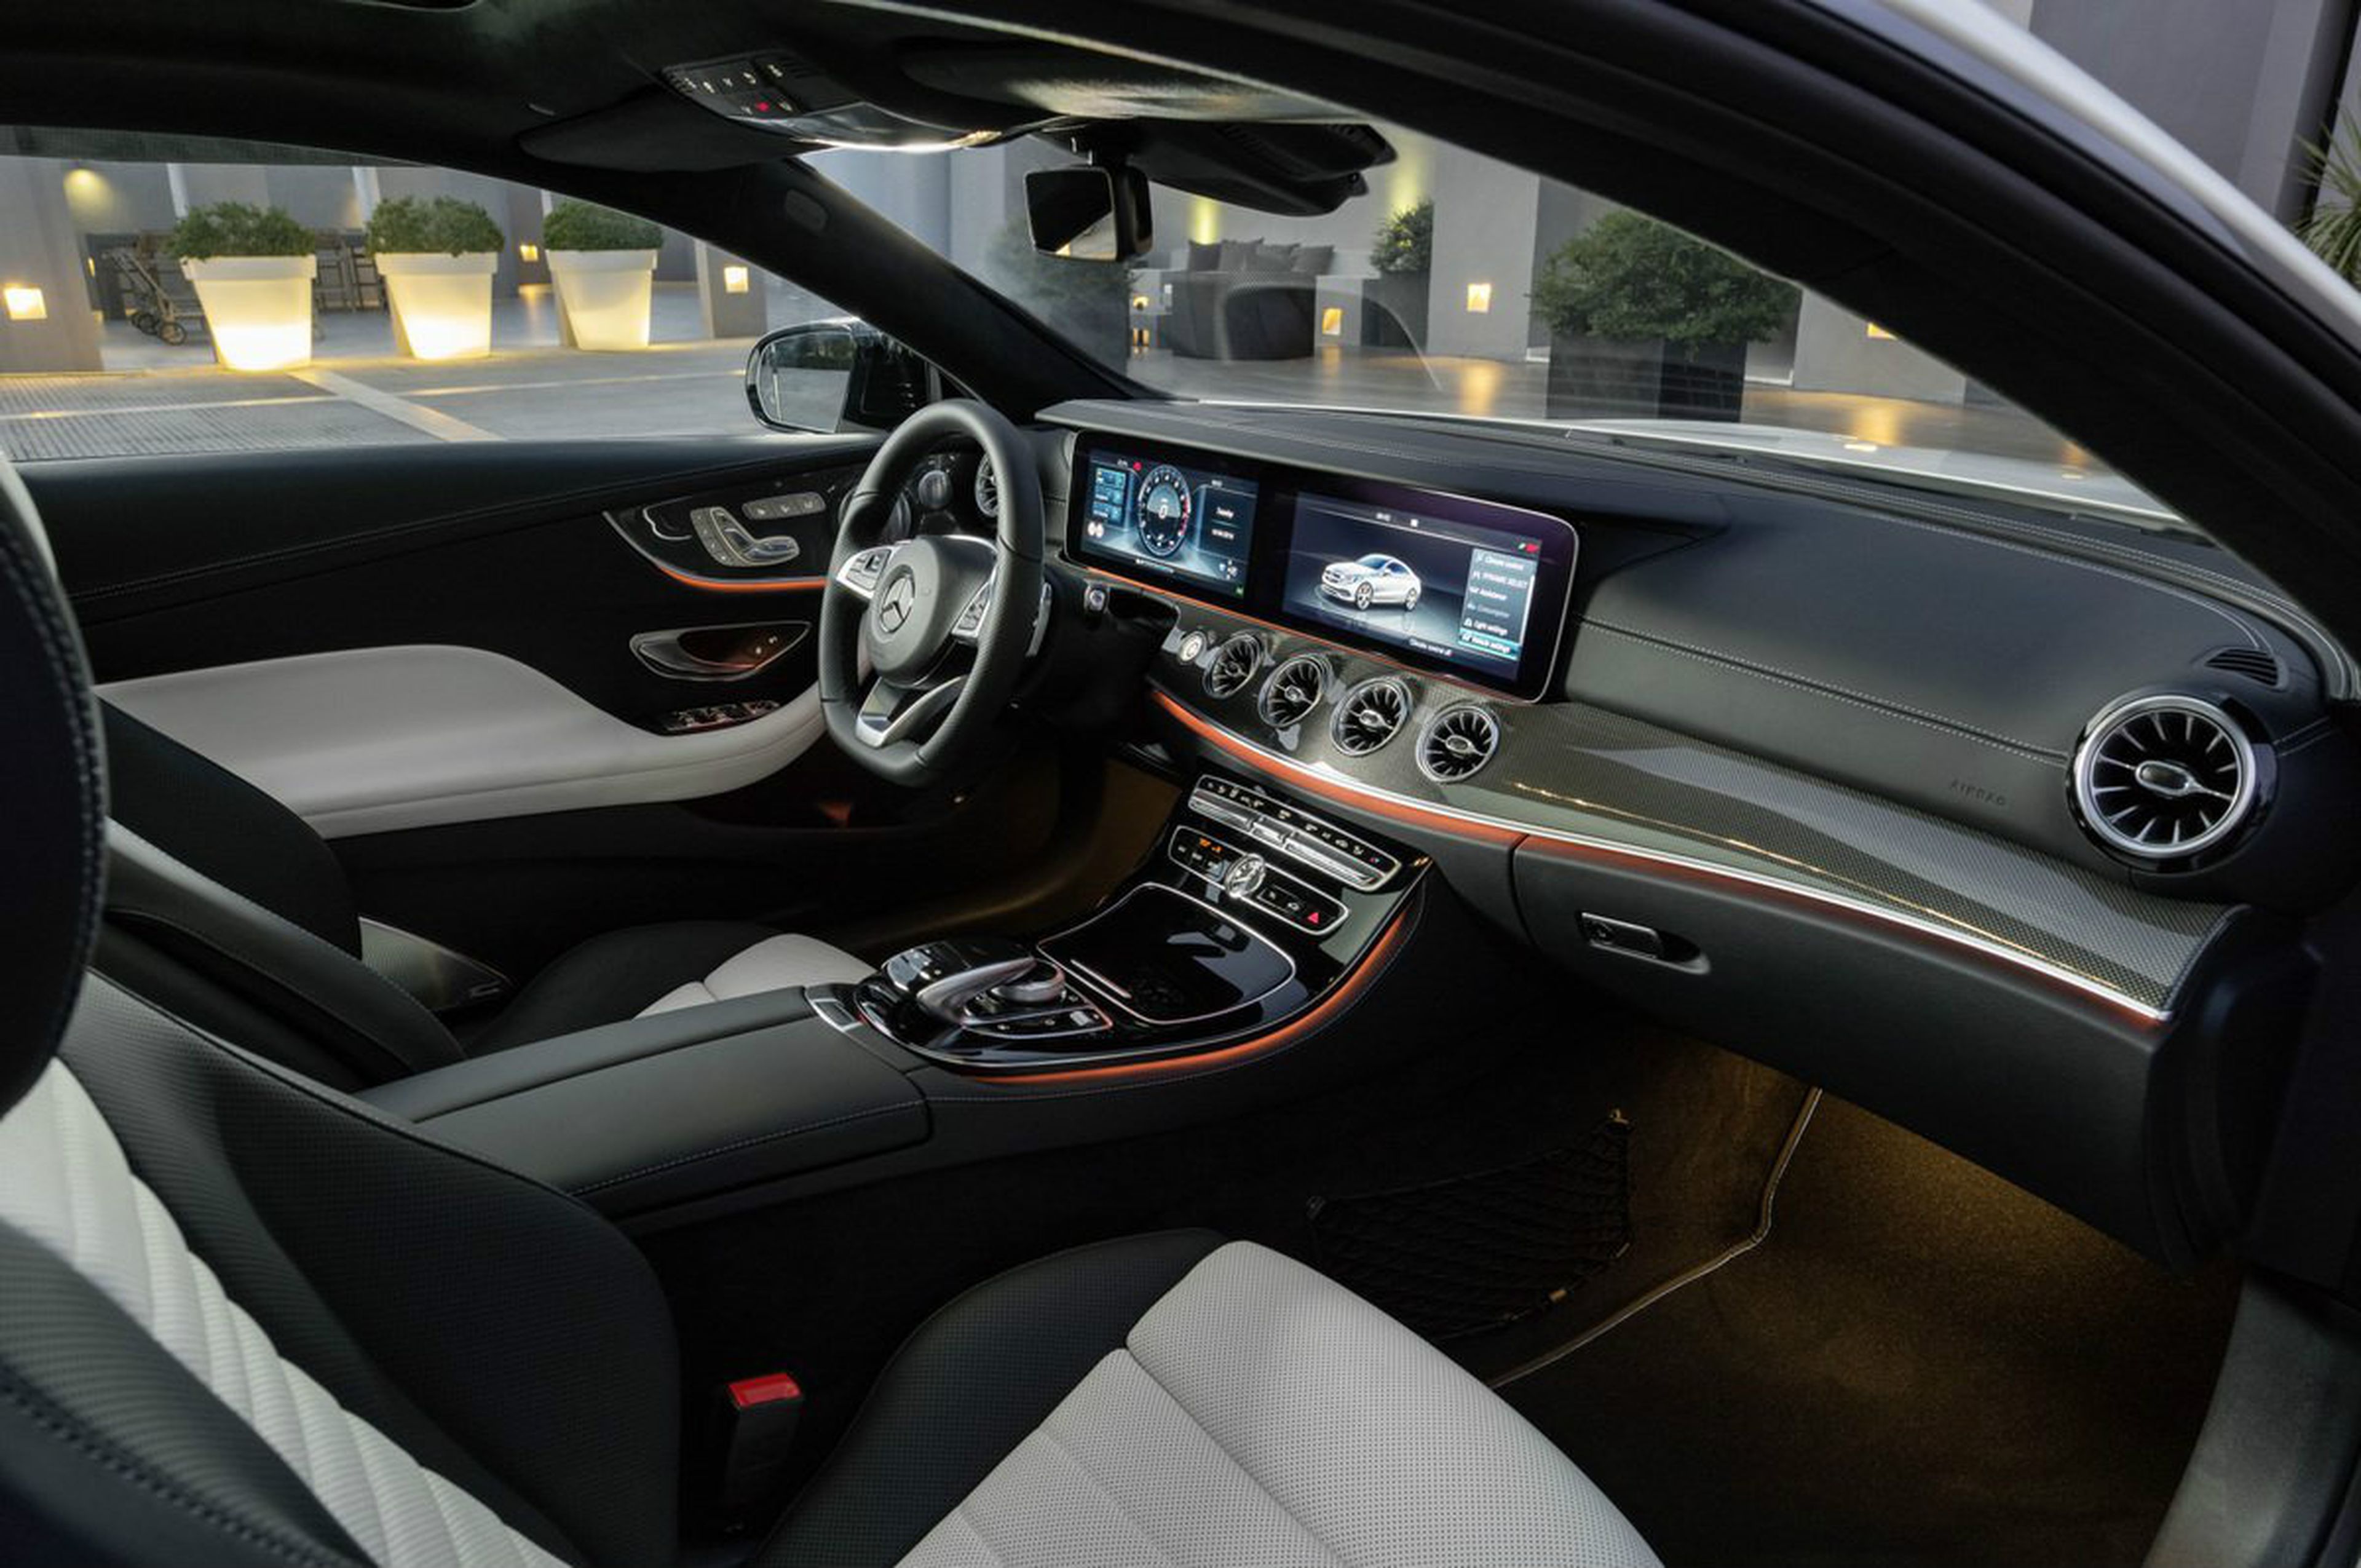 Comparativa sistemas conducción autónoma-Mercedes Benz Drive